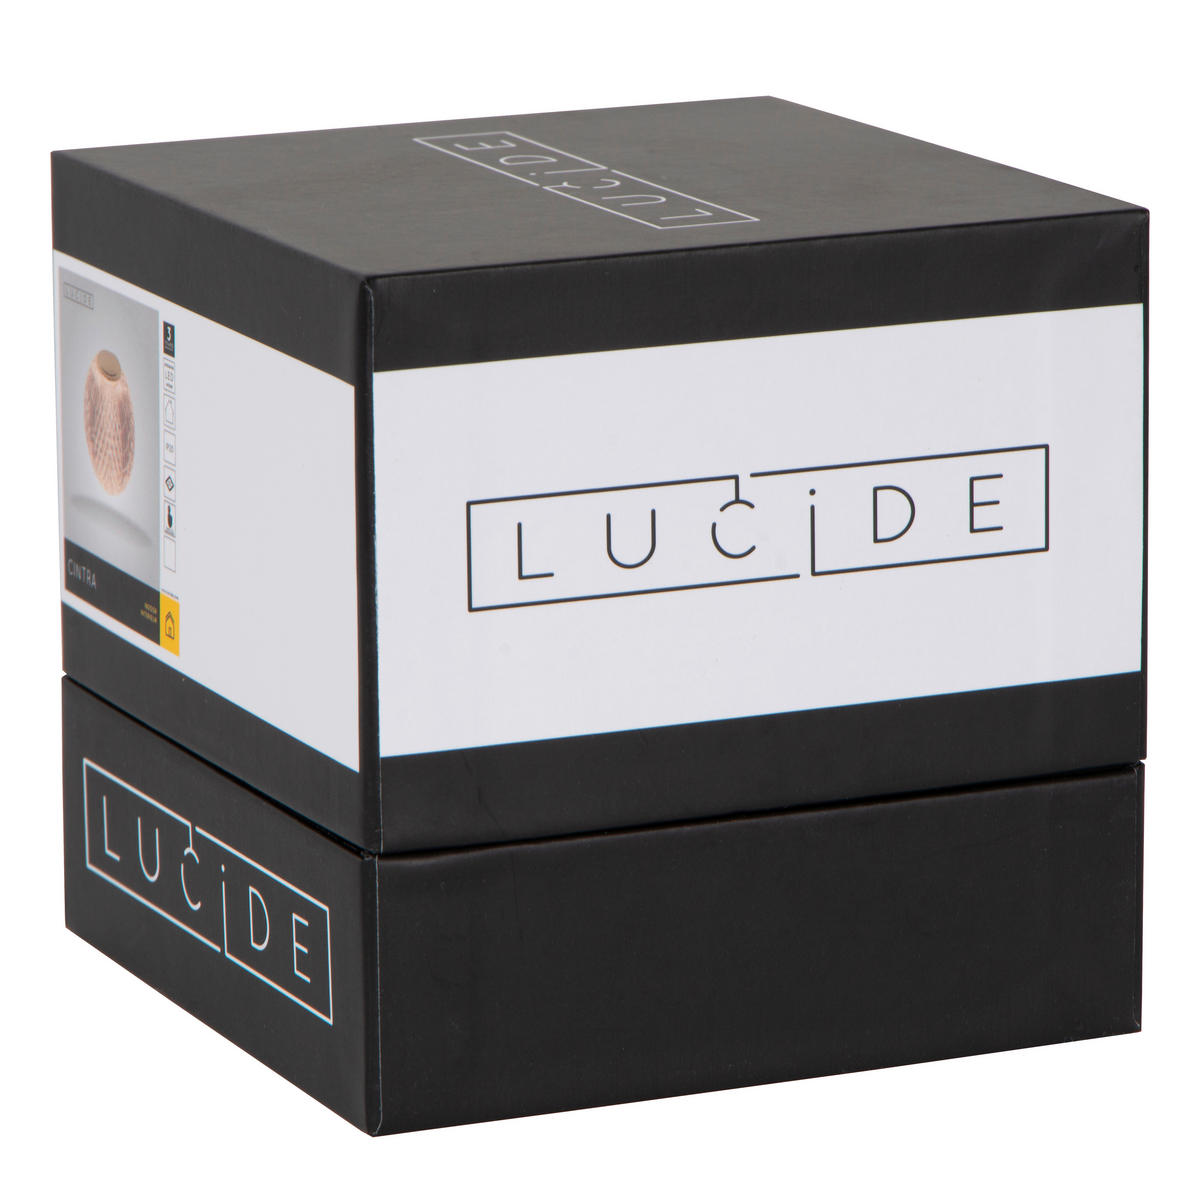 LED-TISCHLEUCHTE Cintra 9/9/8.7 cm   - Transparent, Design, Kunststoff (9/9/8.7cm) - Lucide